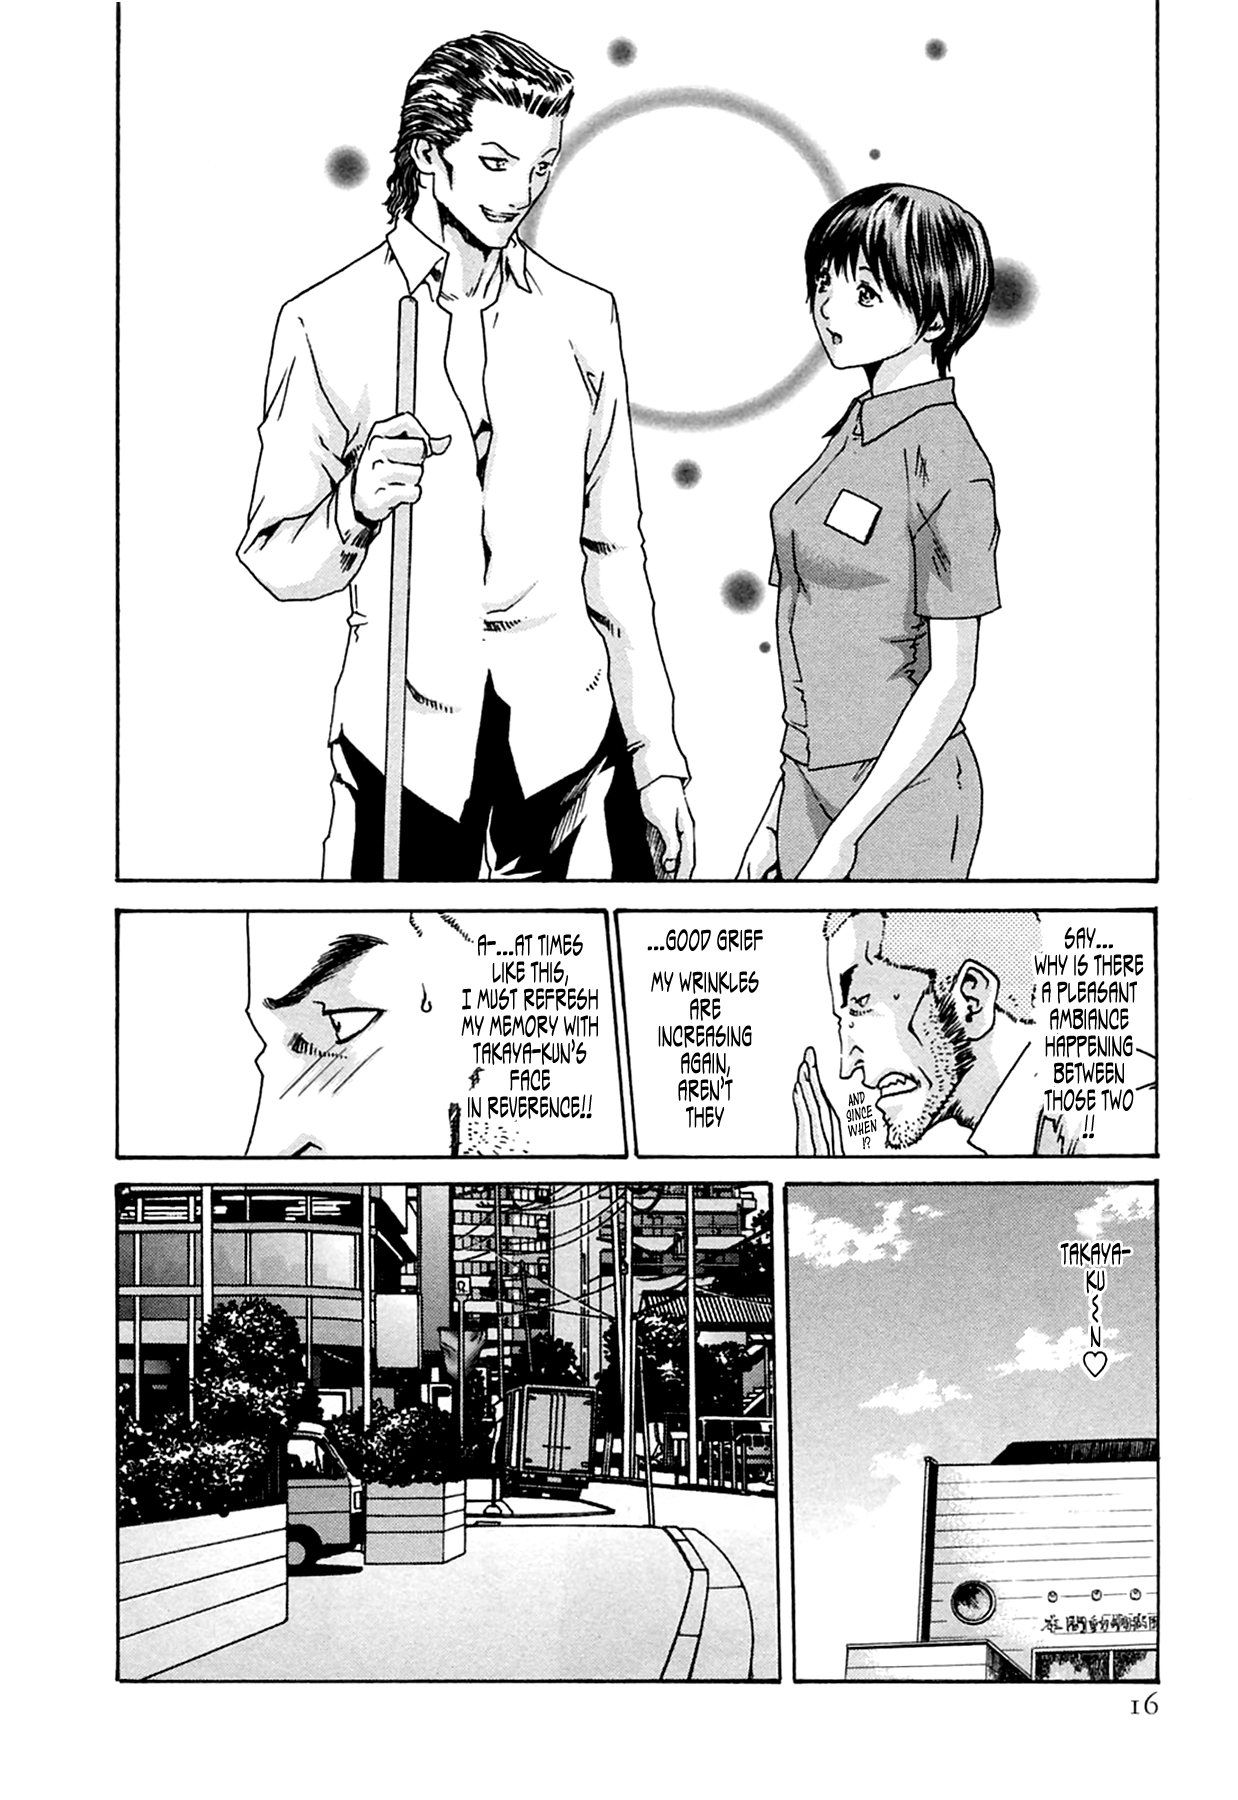 [Haruki] Kisei Juui Suzune (Parasite Doctor Suzune) Vol.02 - CH10-12 page 16 full